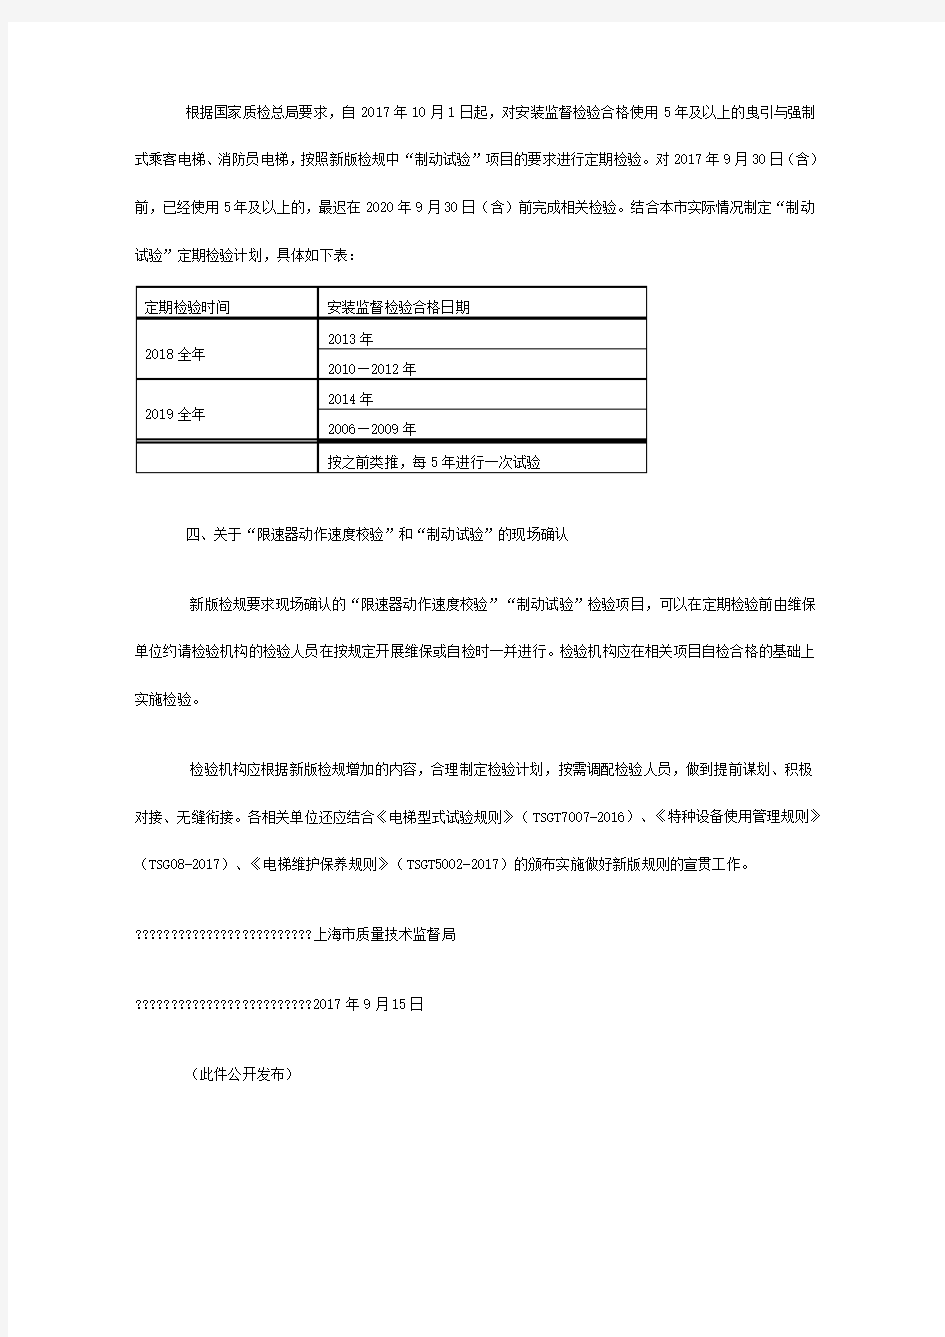 上海市质量技术监督局关于实施电梯检规号修改单有关意见的通知